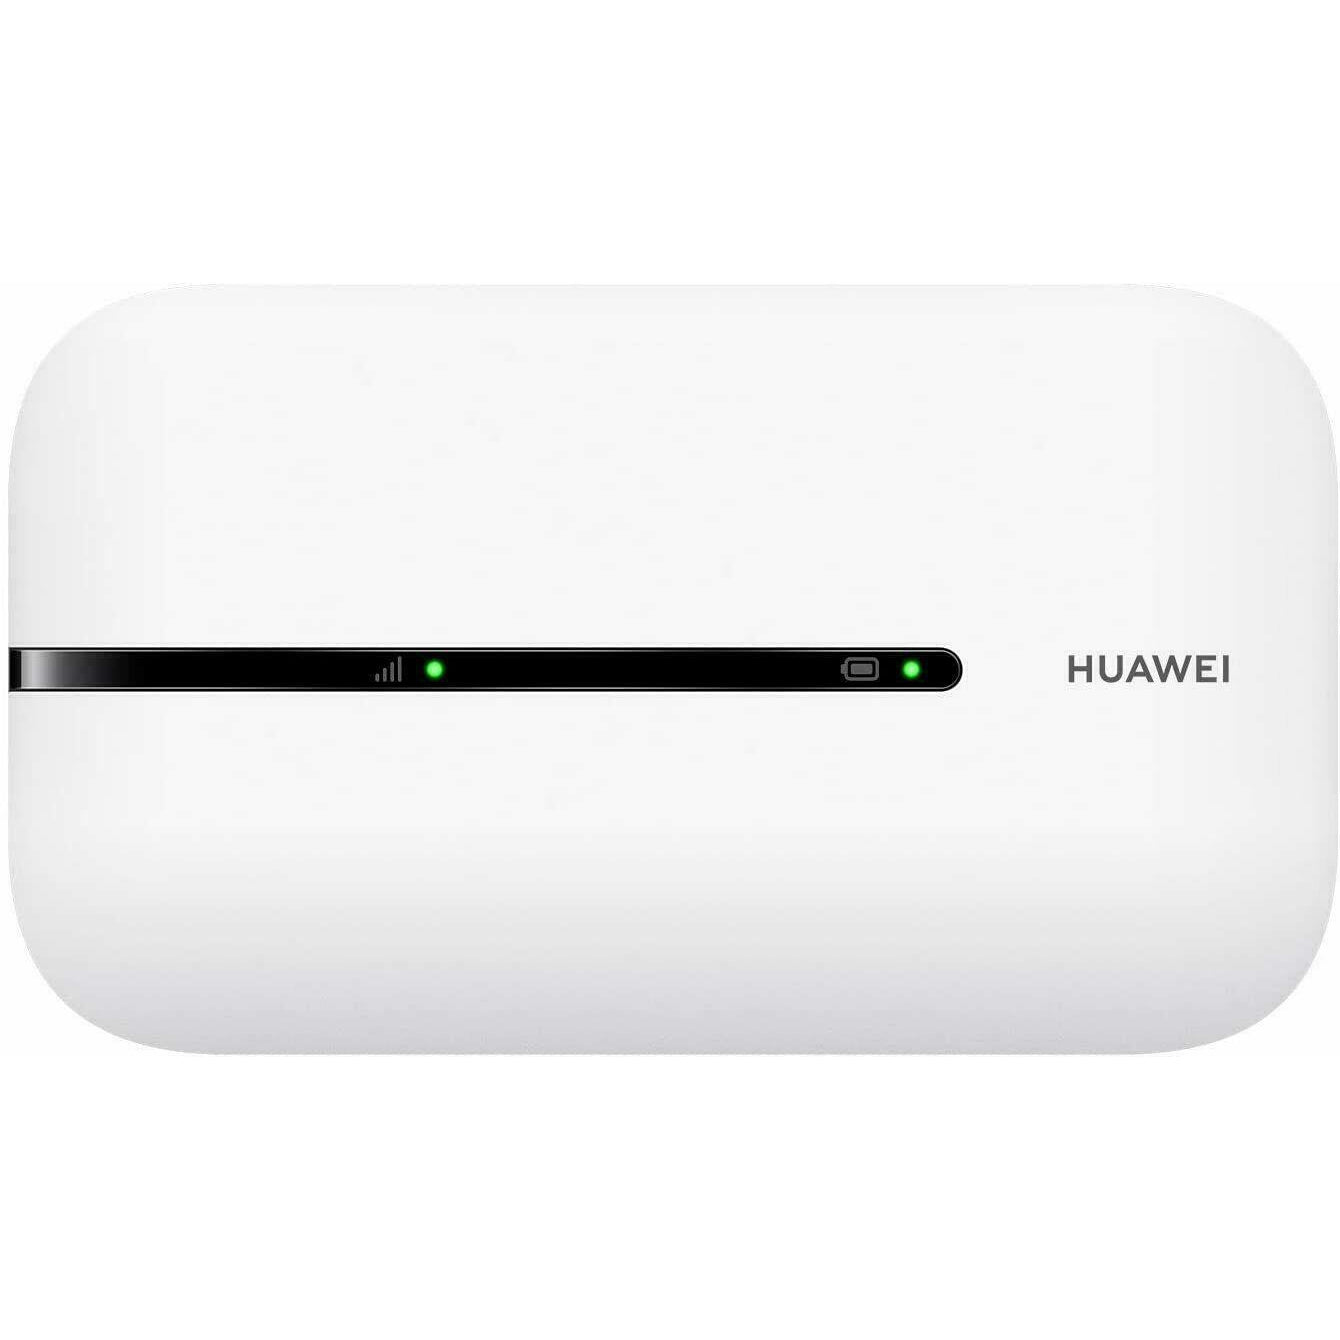 Huawei E5576-320 Portable Mobile WiFi Router Hotspot